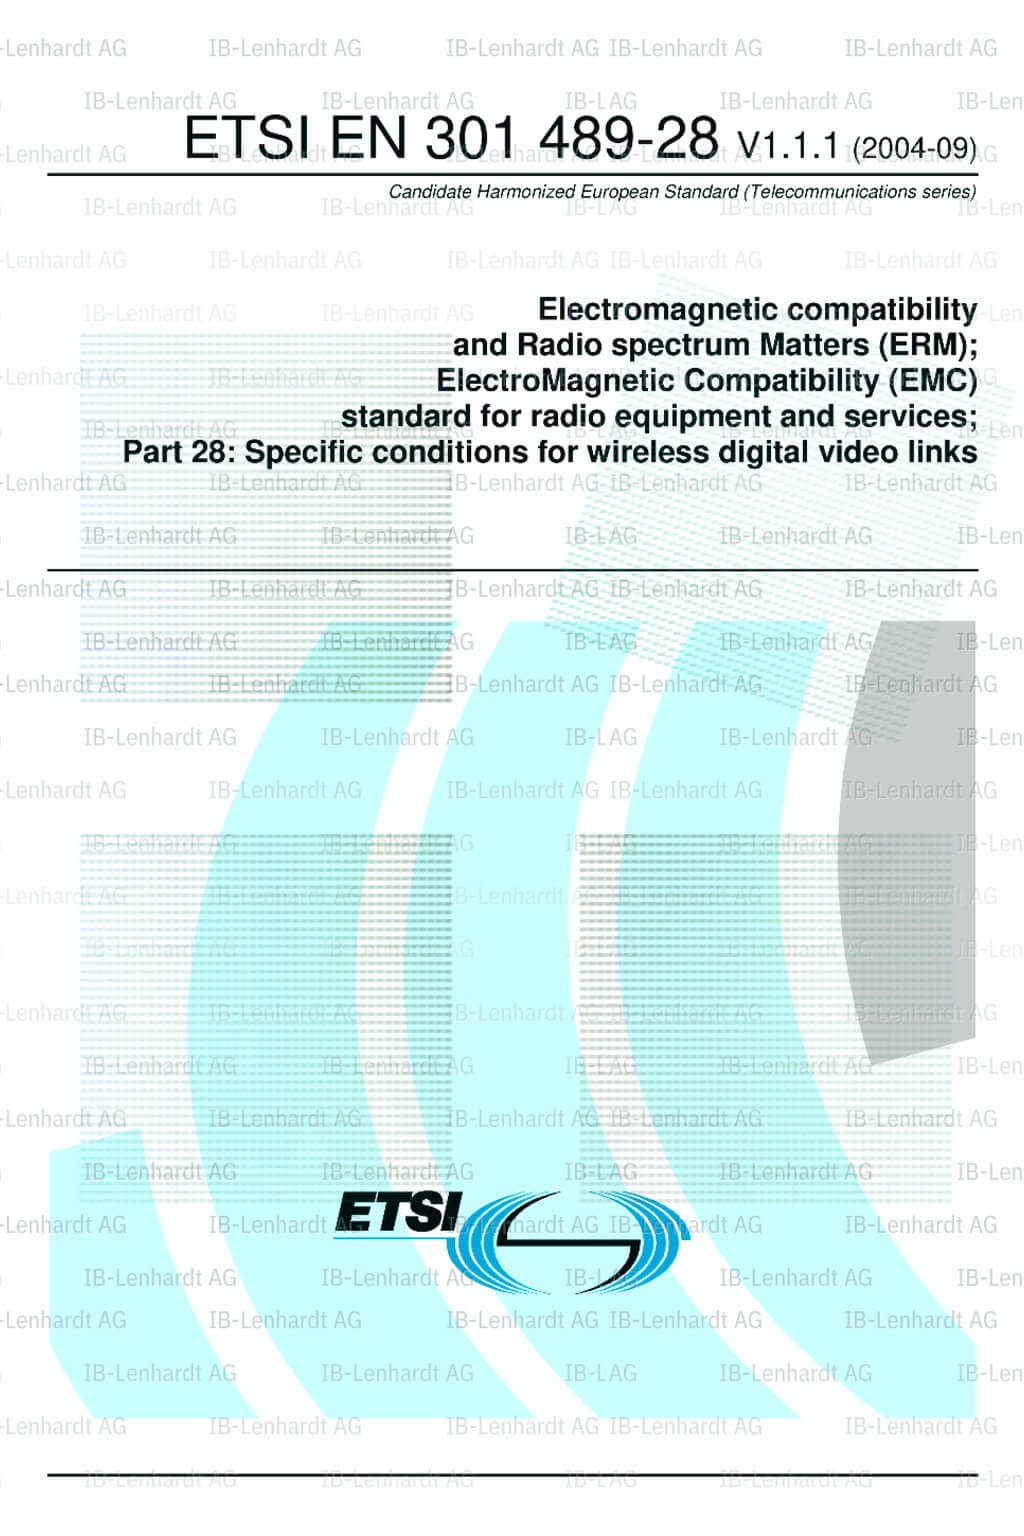 ETSI EN 301 489-28 V1.1.1